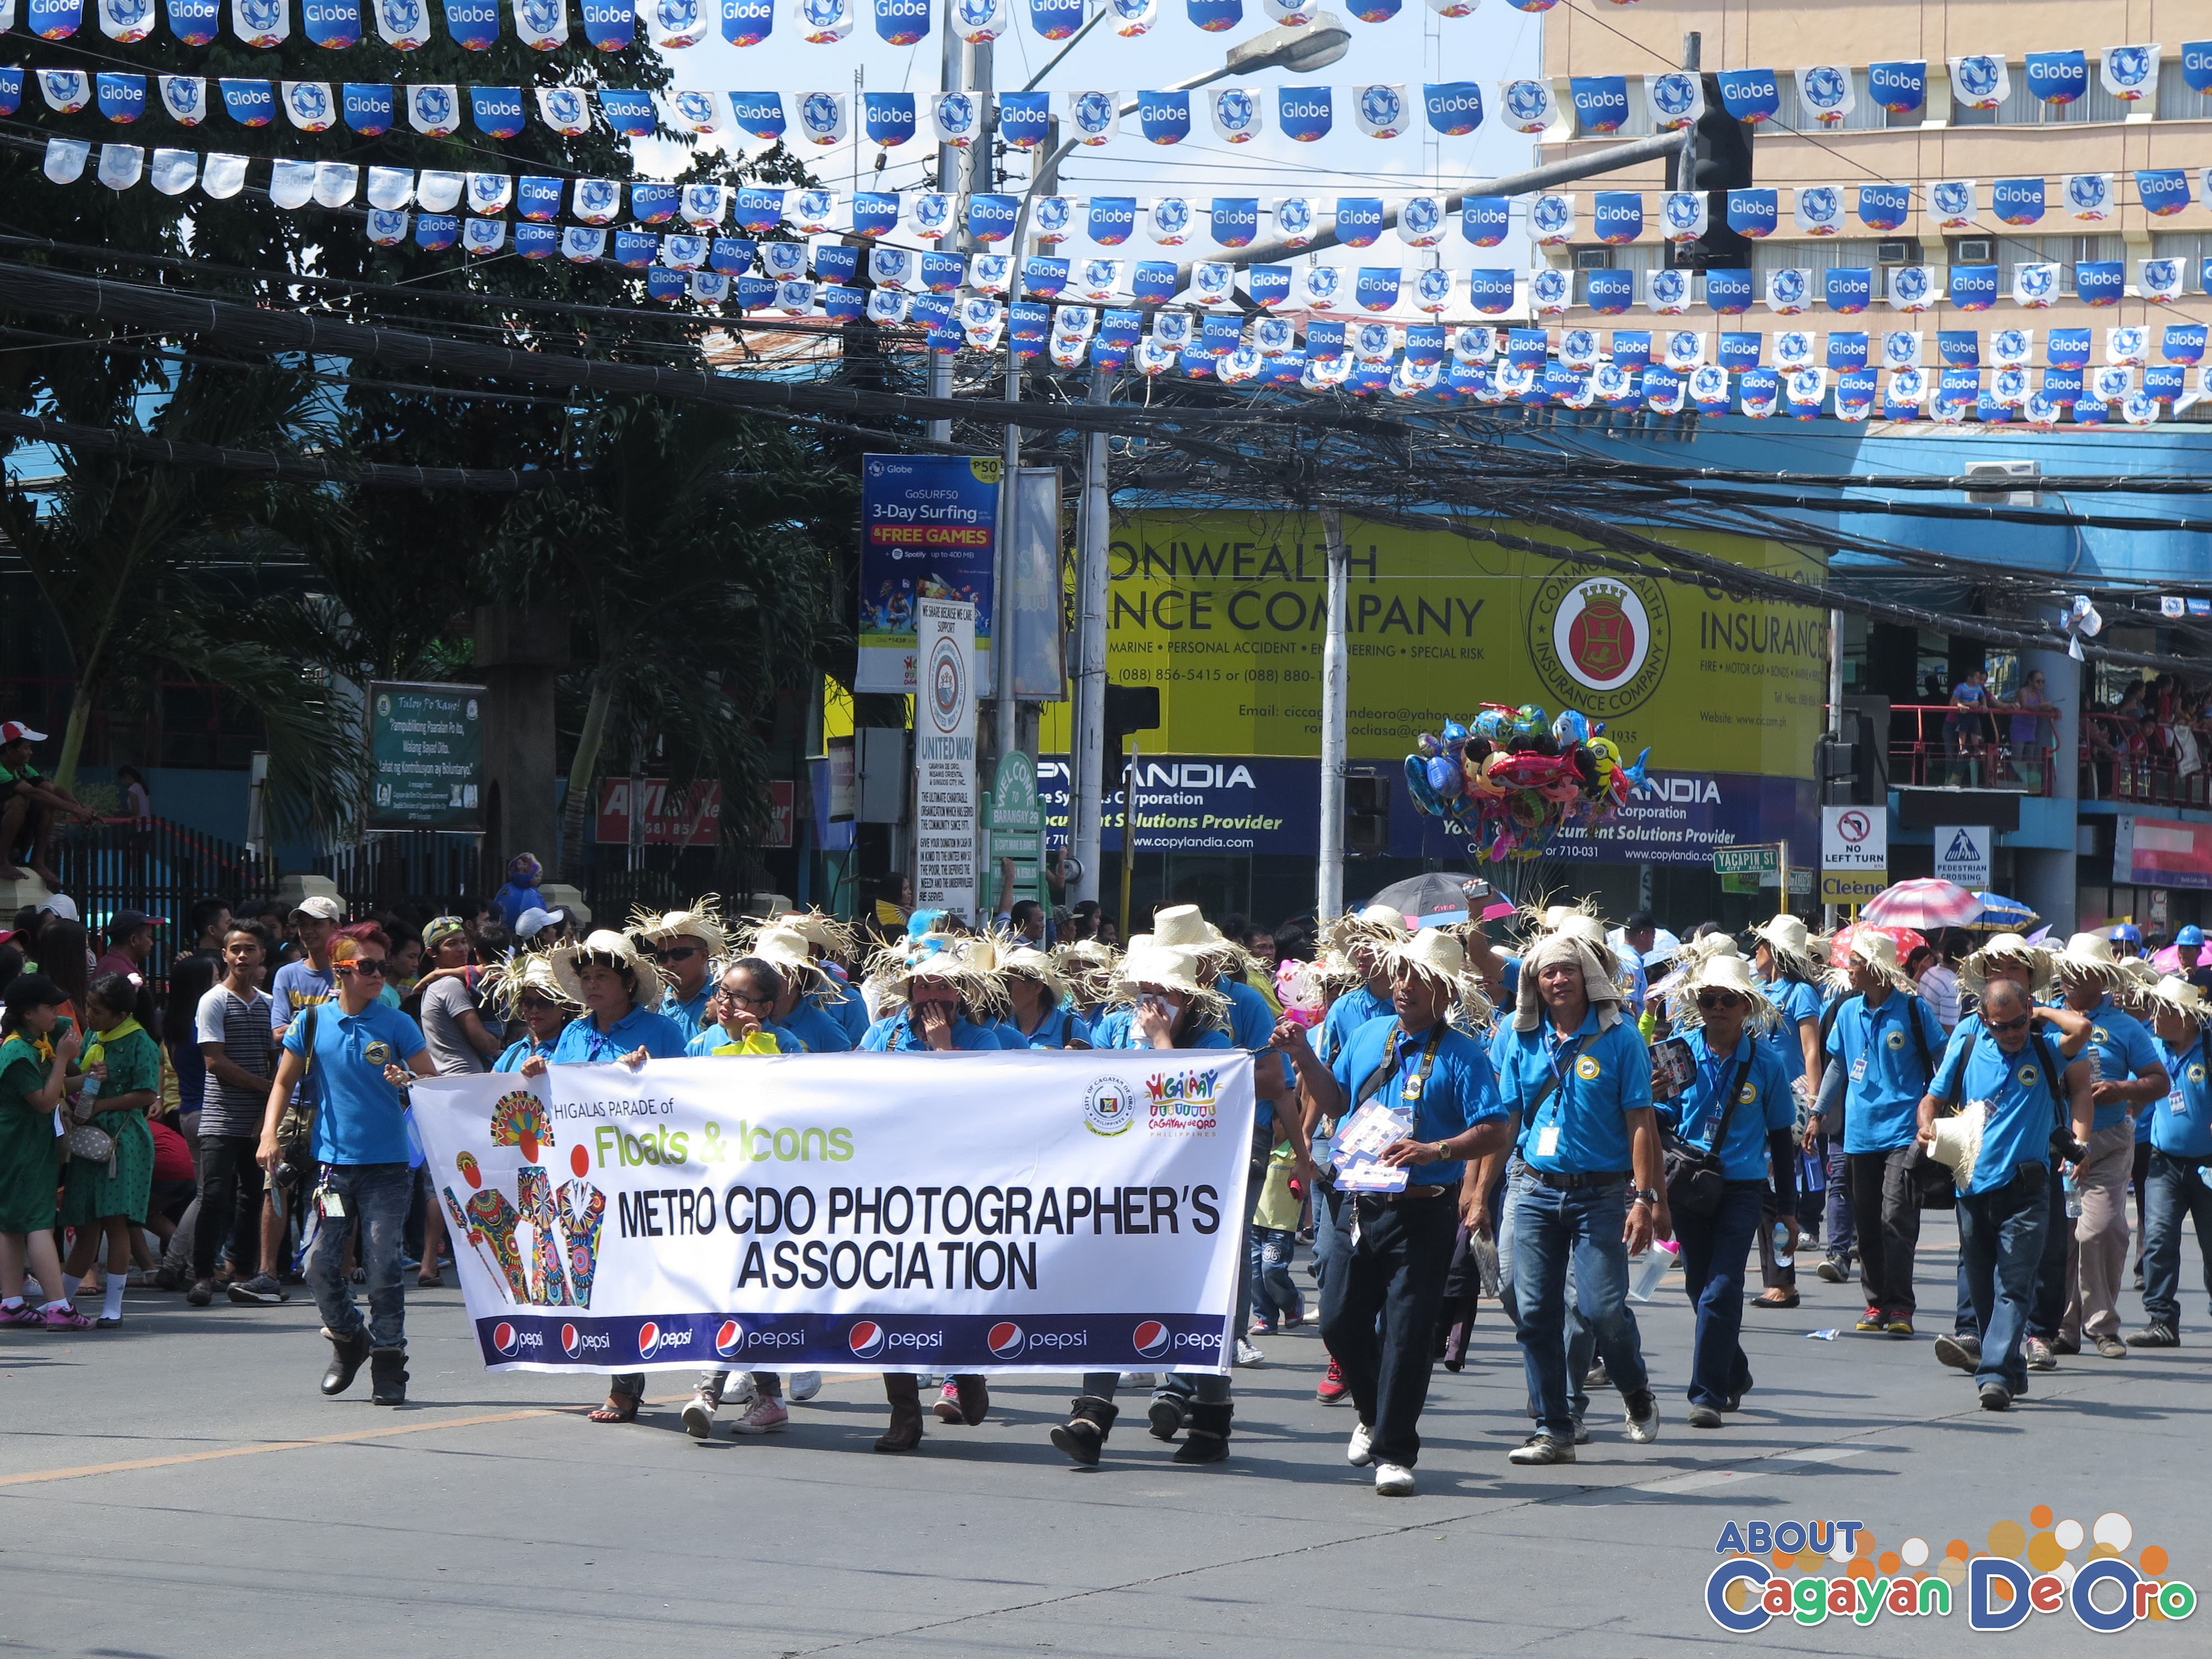 Metro CDO Photographer's Association at Cagayan de Oro The Higalas Parade of Floats and Icons 2015